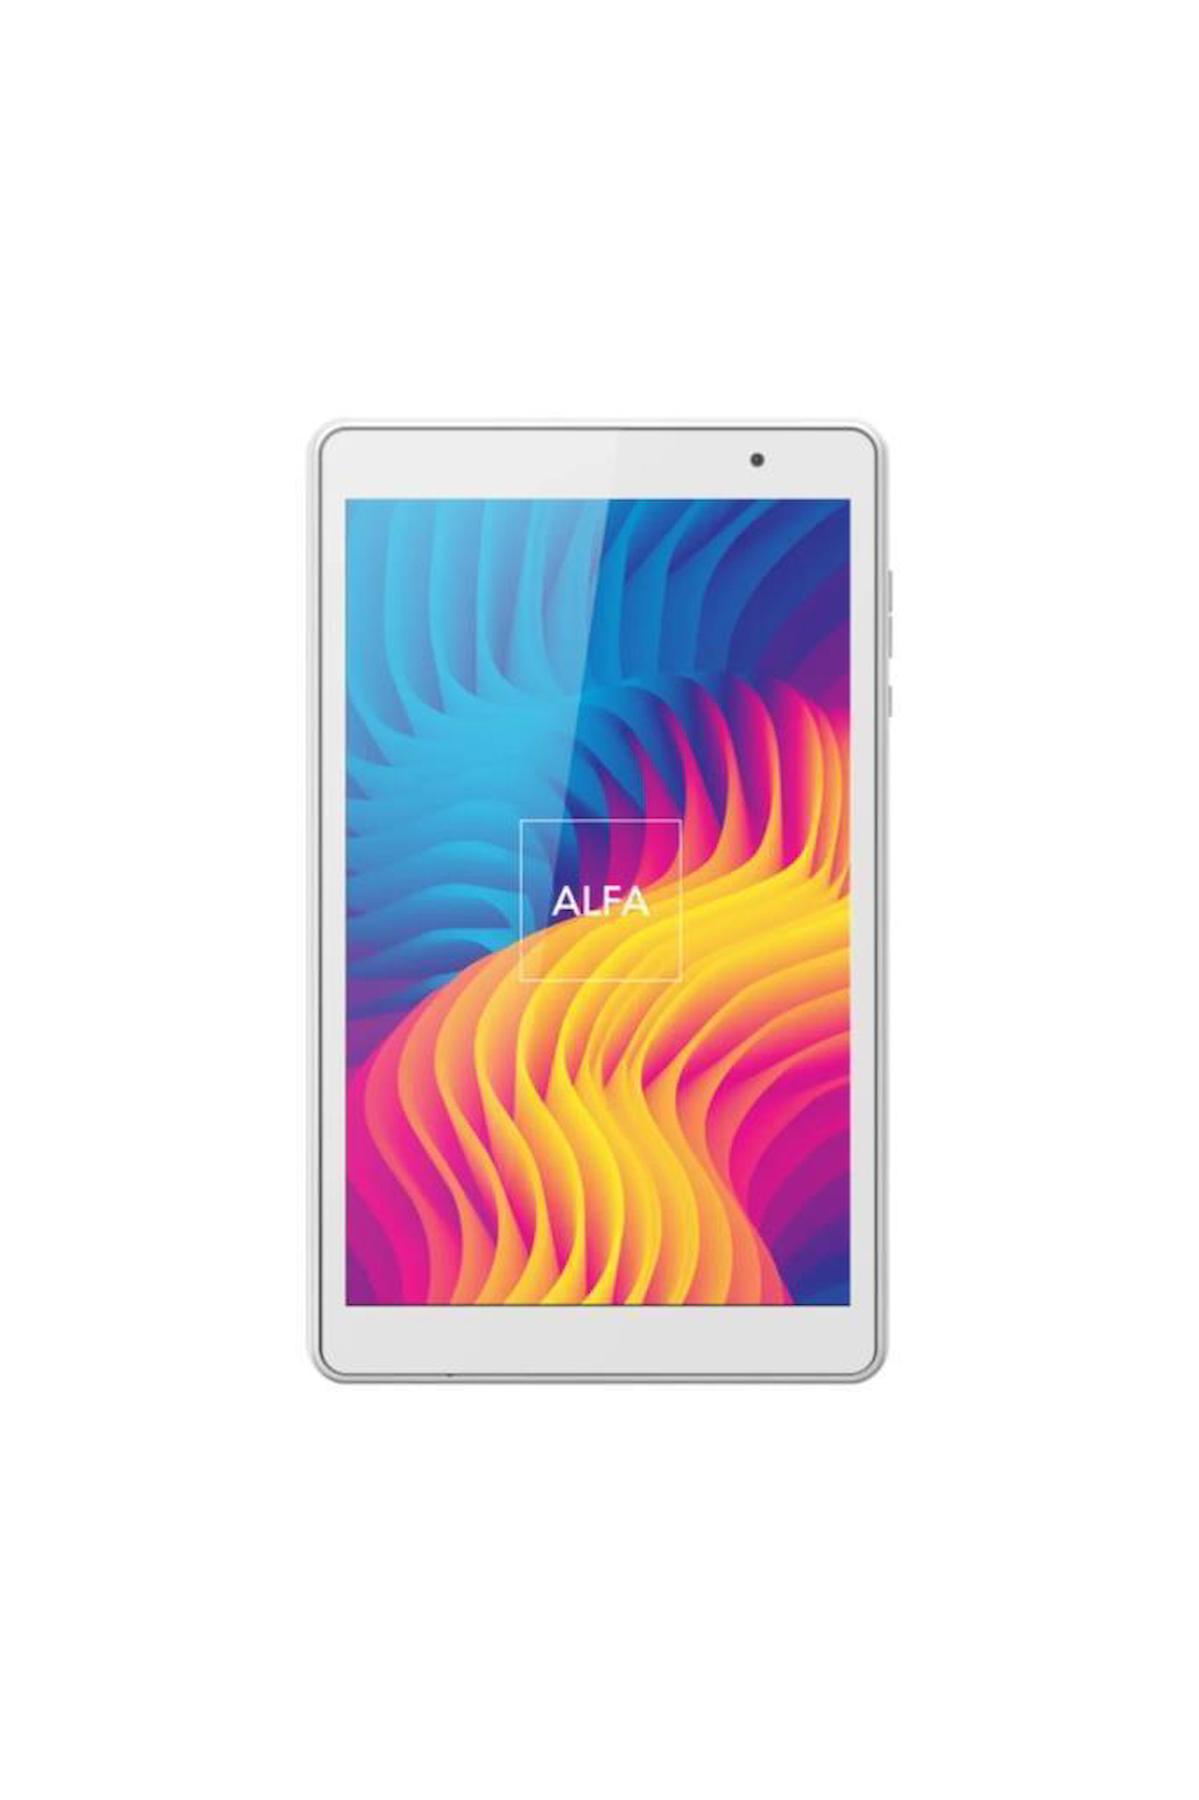 Hometech Alfa-8SL 16 GB Android 1 GB Ram 8.0 inç Tablet Gümüş